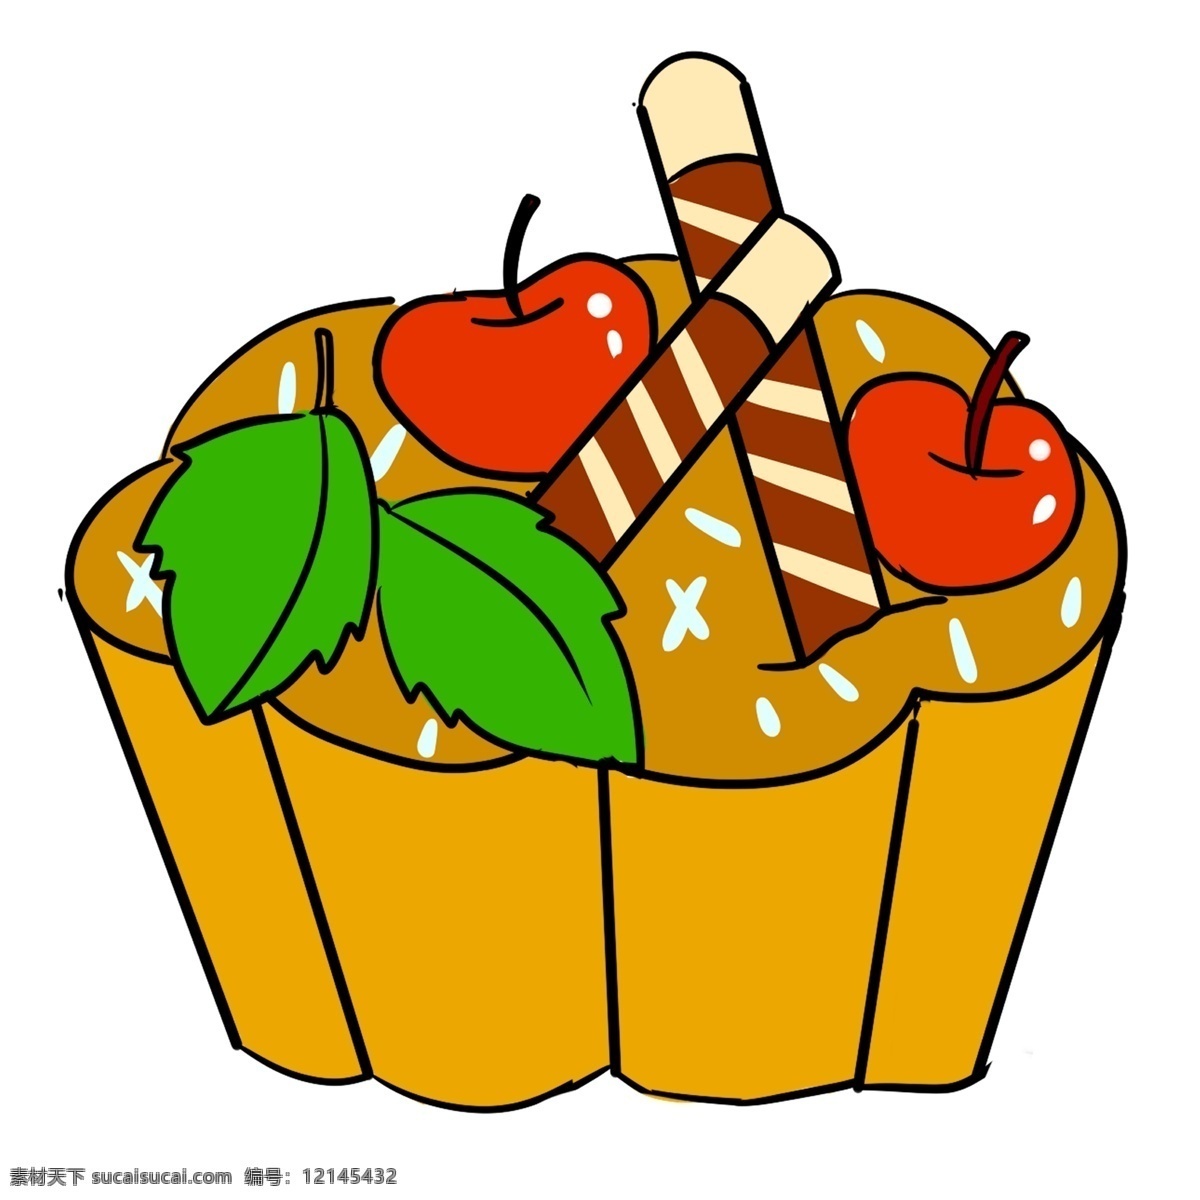 彩色 手绘 蛋糕 食物 元素 创意 美食 水果 苹果 叶子 吃的 美味 庆祝 生日 樱桃